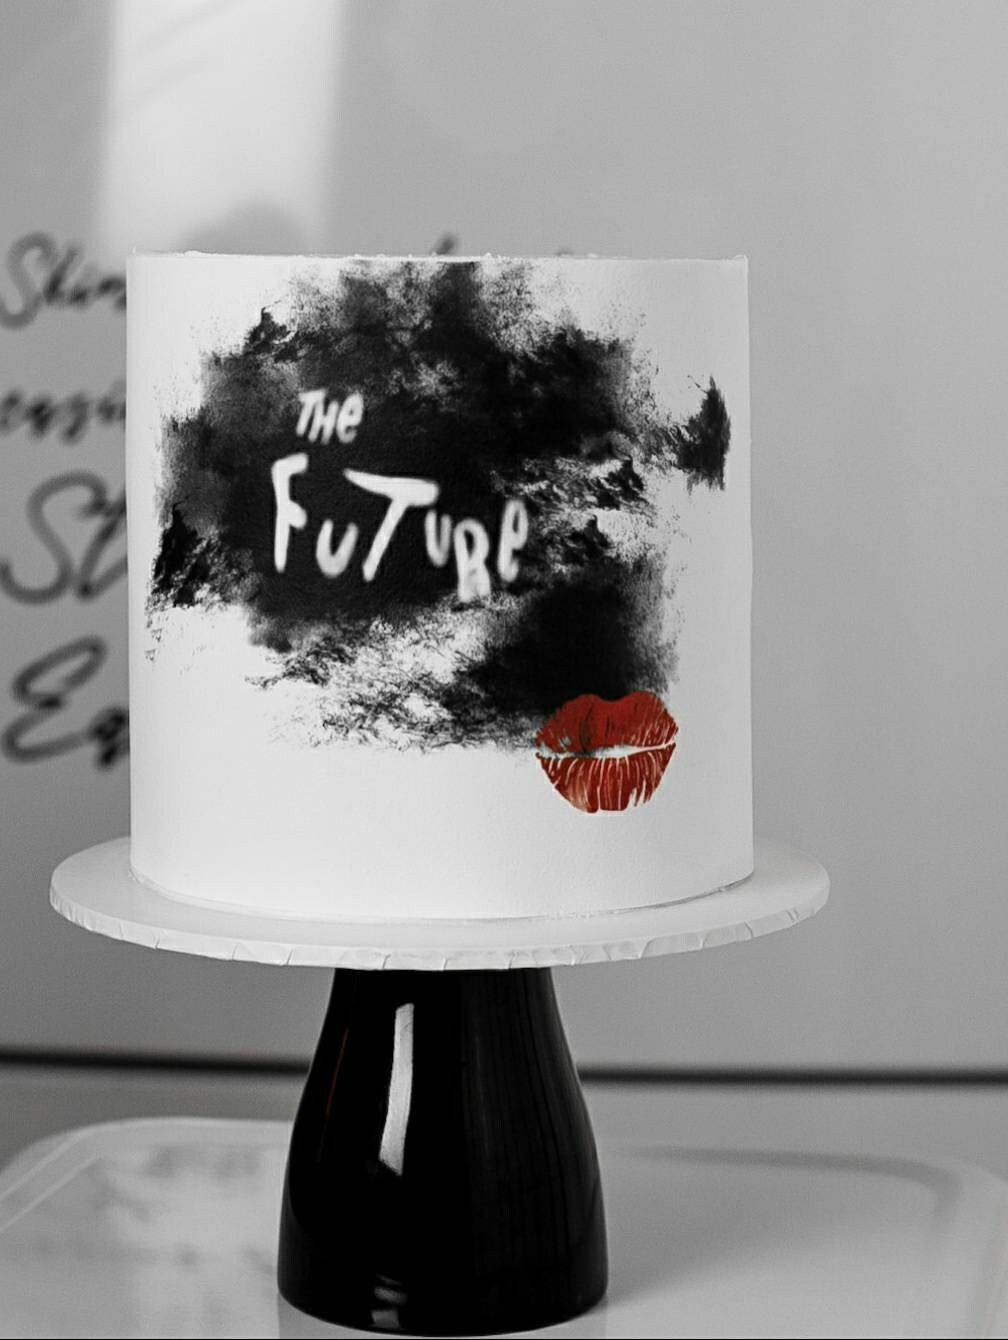 Cruella De Vil Edible Cake Image - The Future A4 Cake wrap - Disney Cruella Inspired Cake Ideas/ Themed Party Props